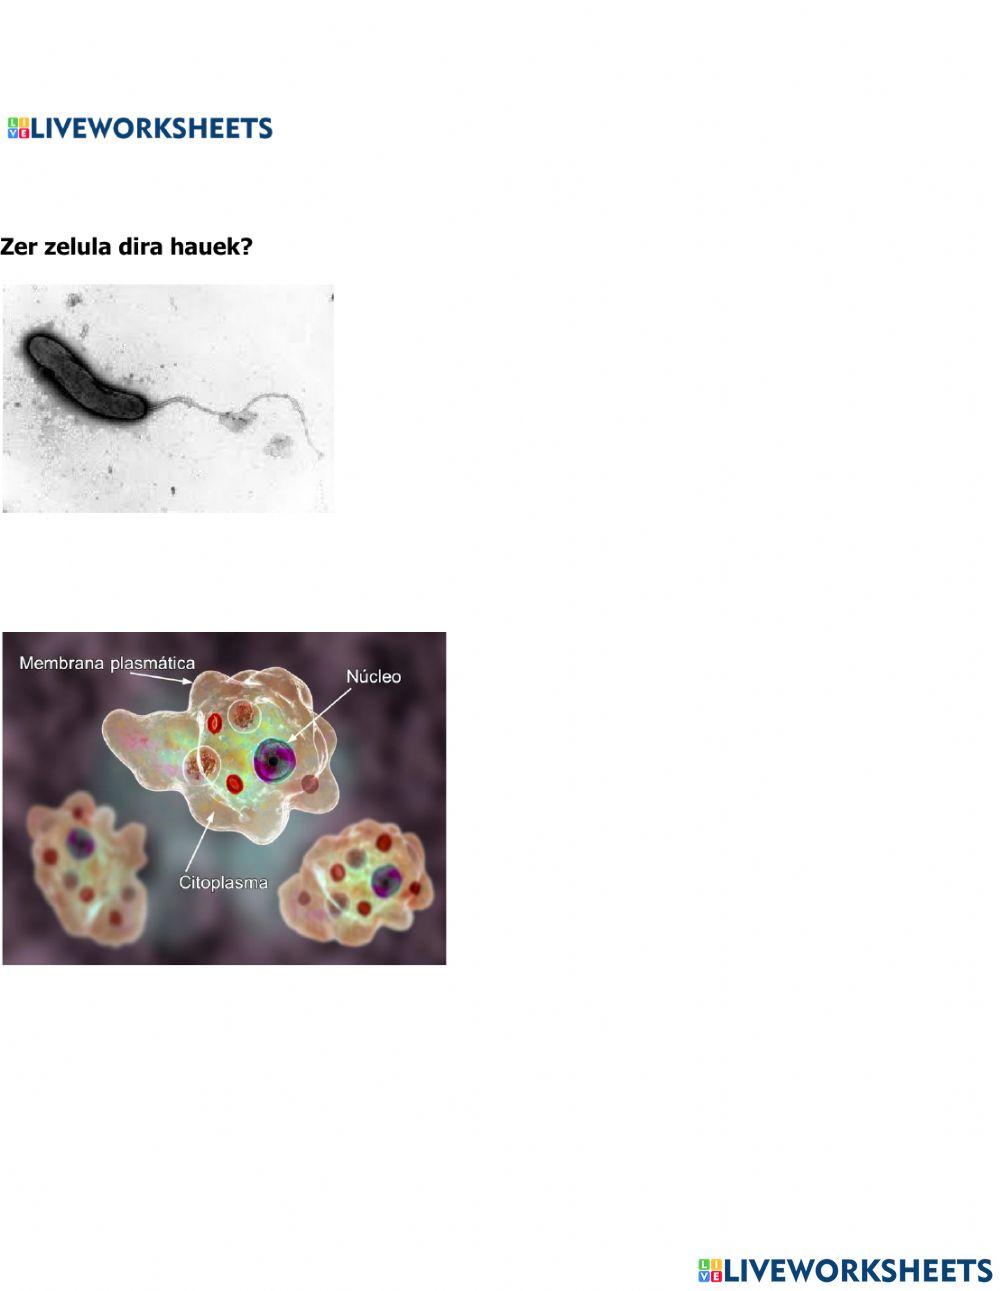 Zelula eukariotoa eta prokariotoak identifikatzen